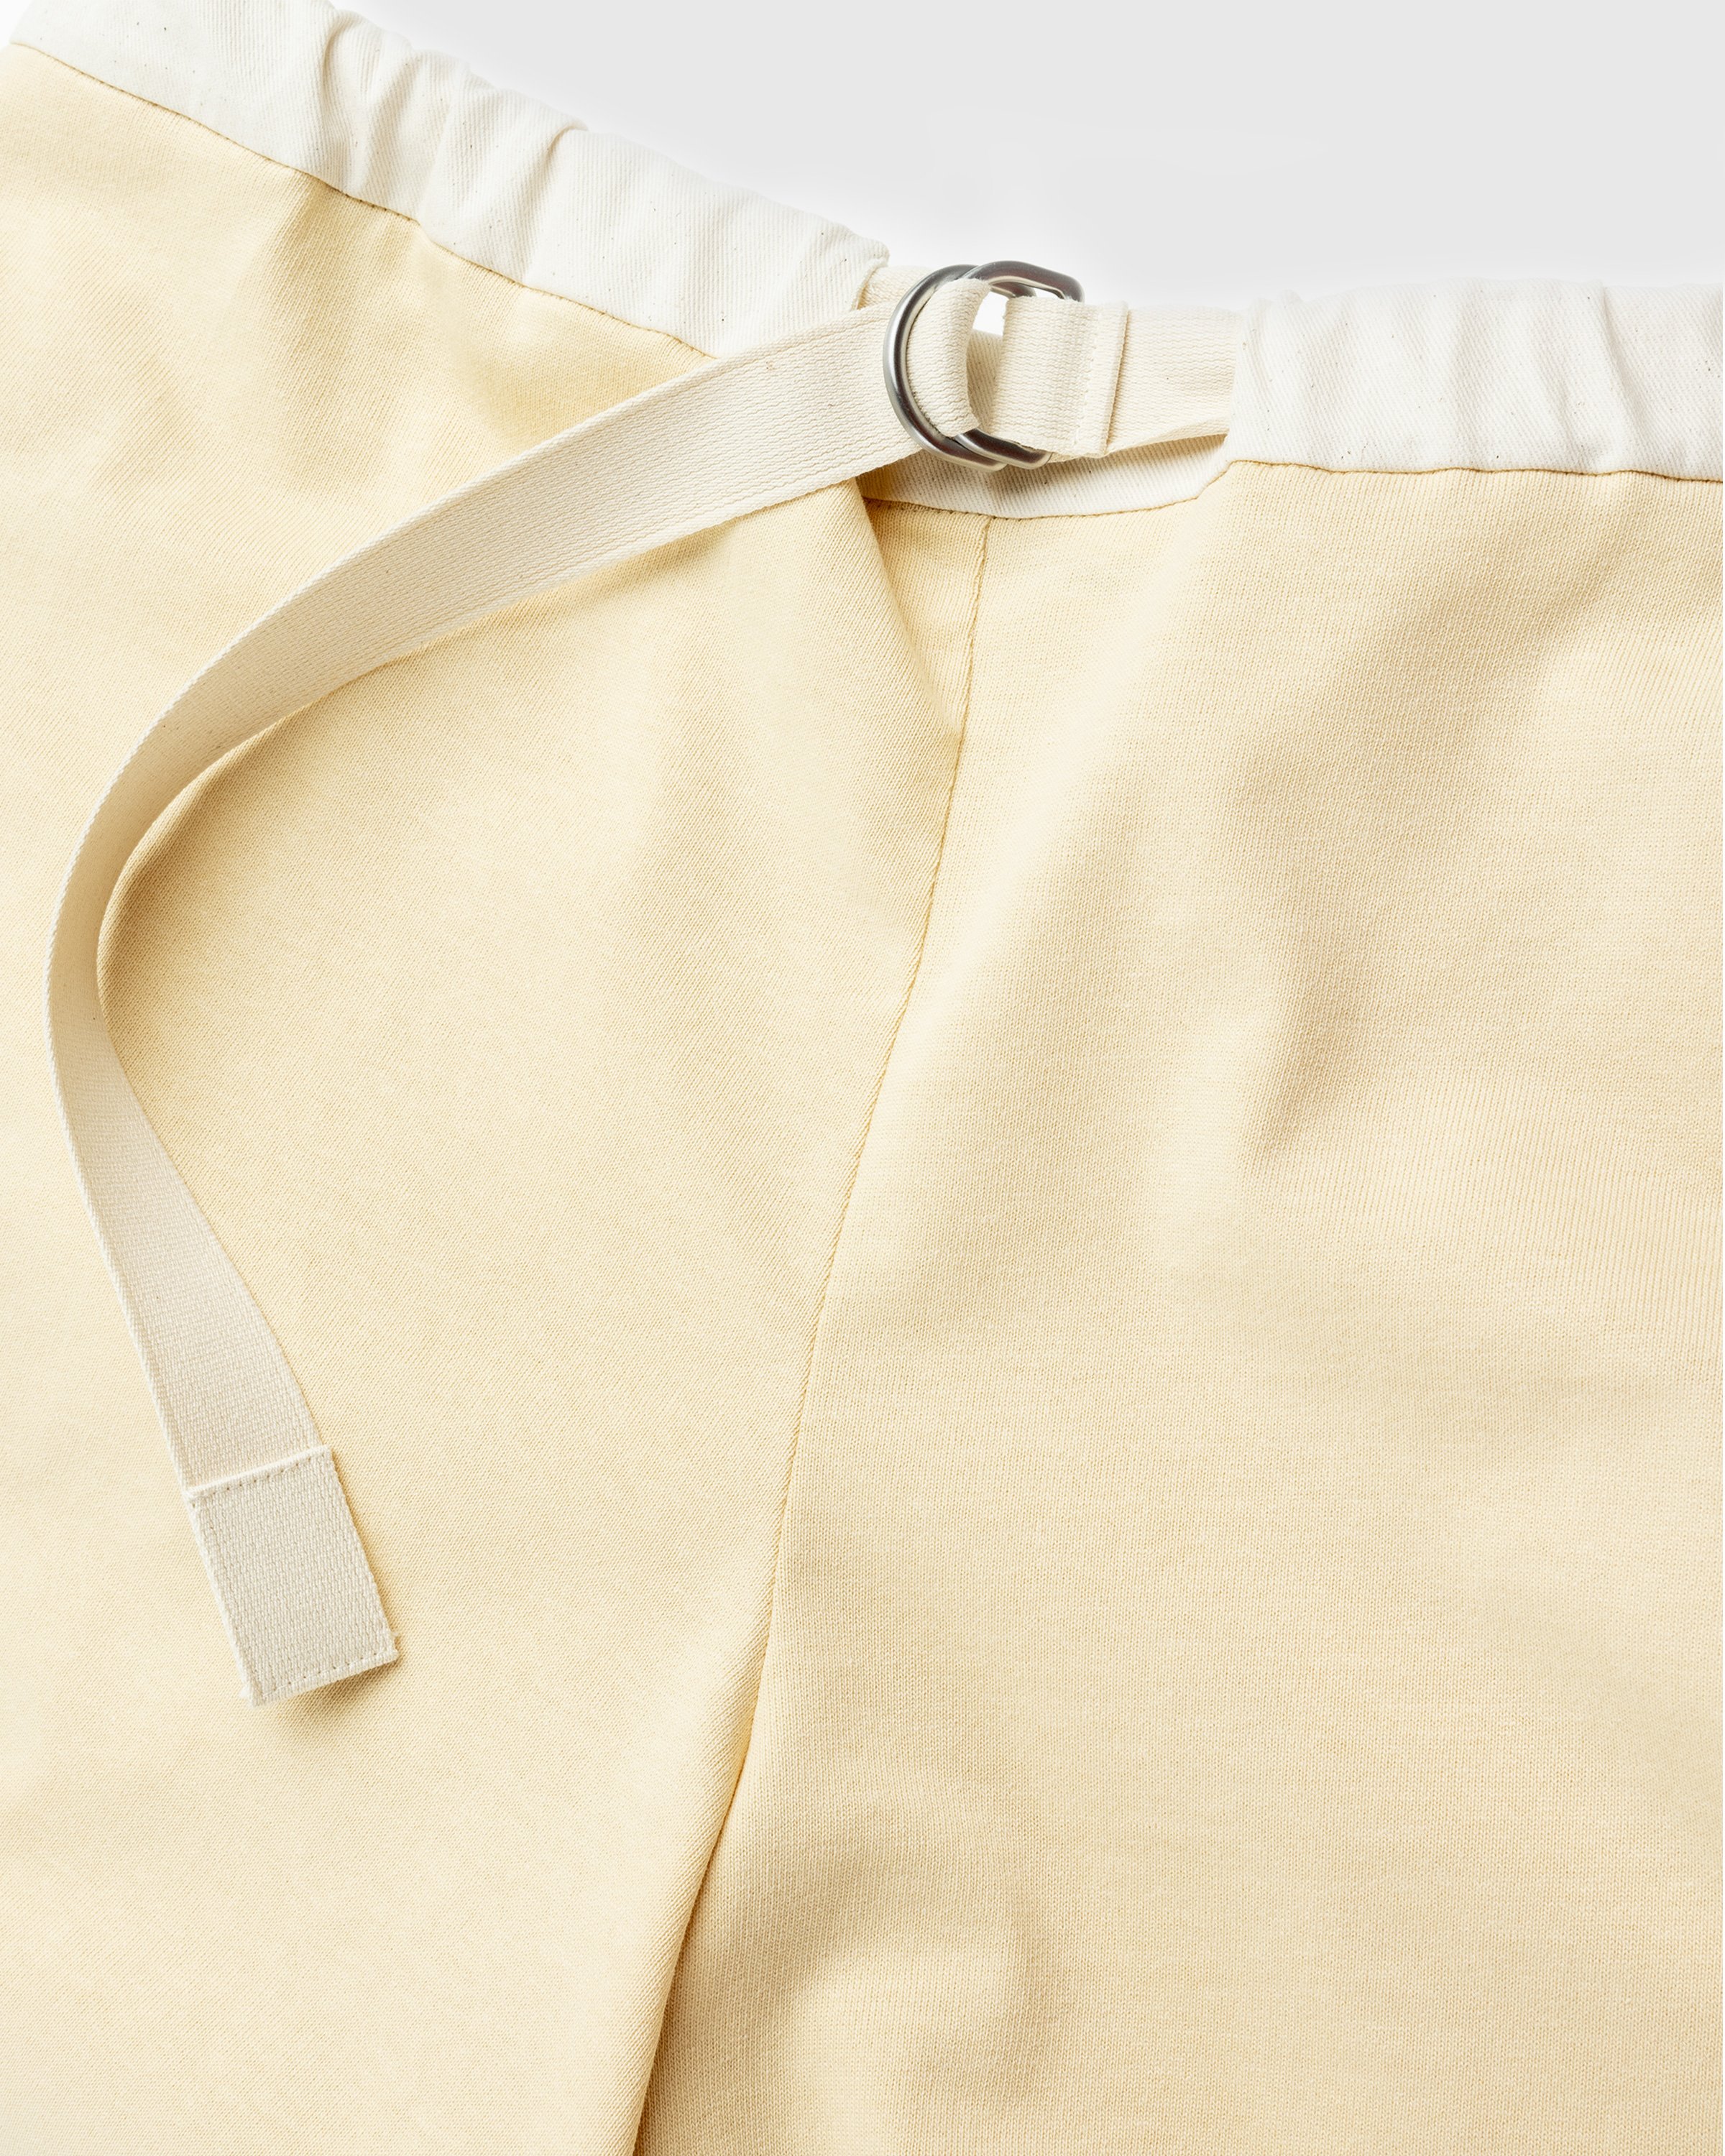 Jil Sander - Shorts - Clothing - Yellow - Image 7